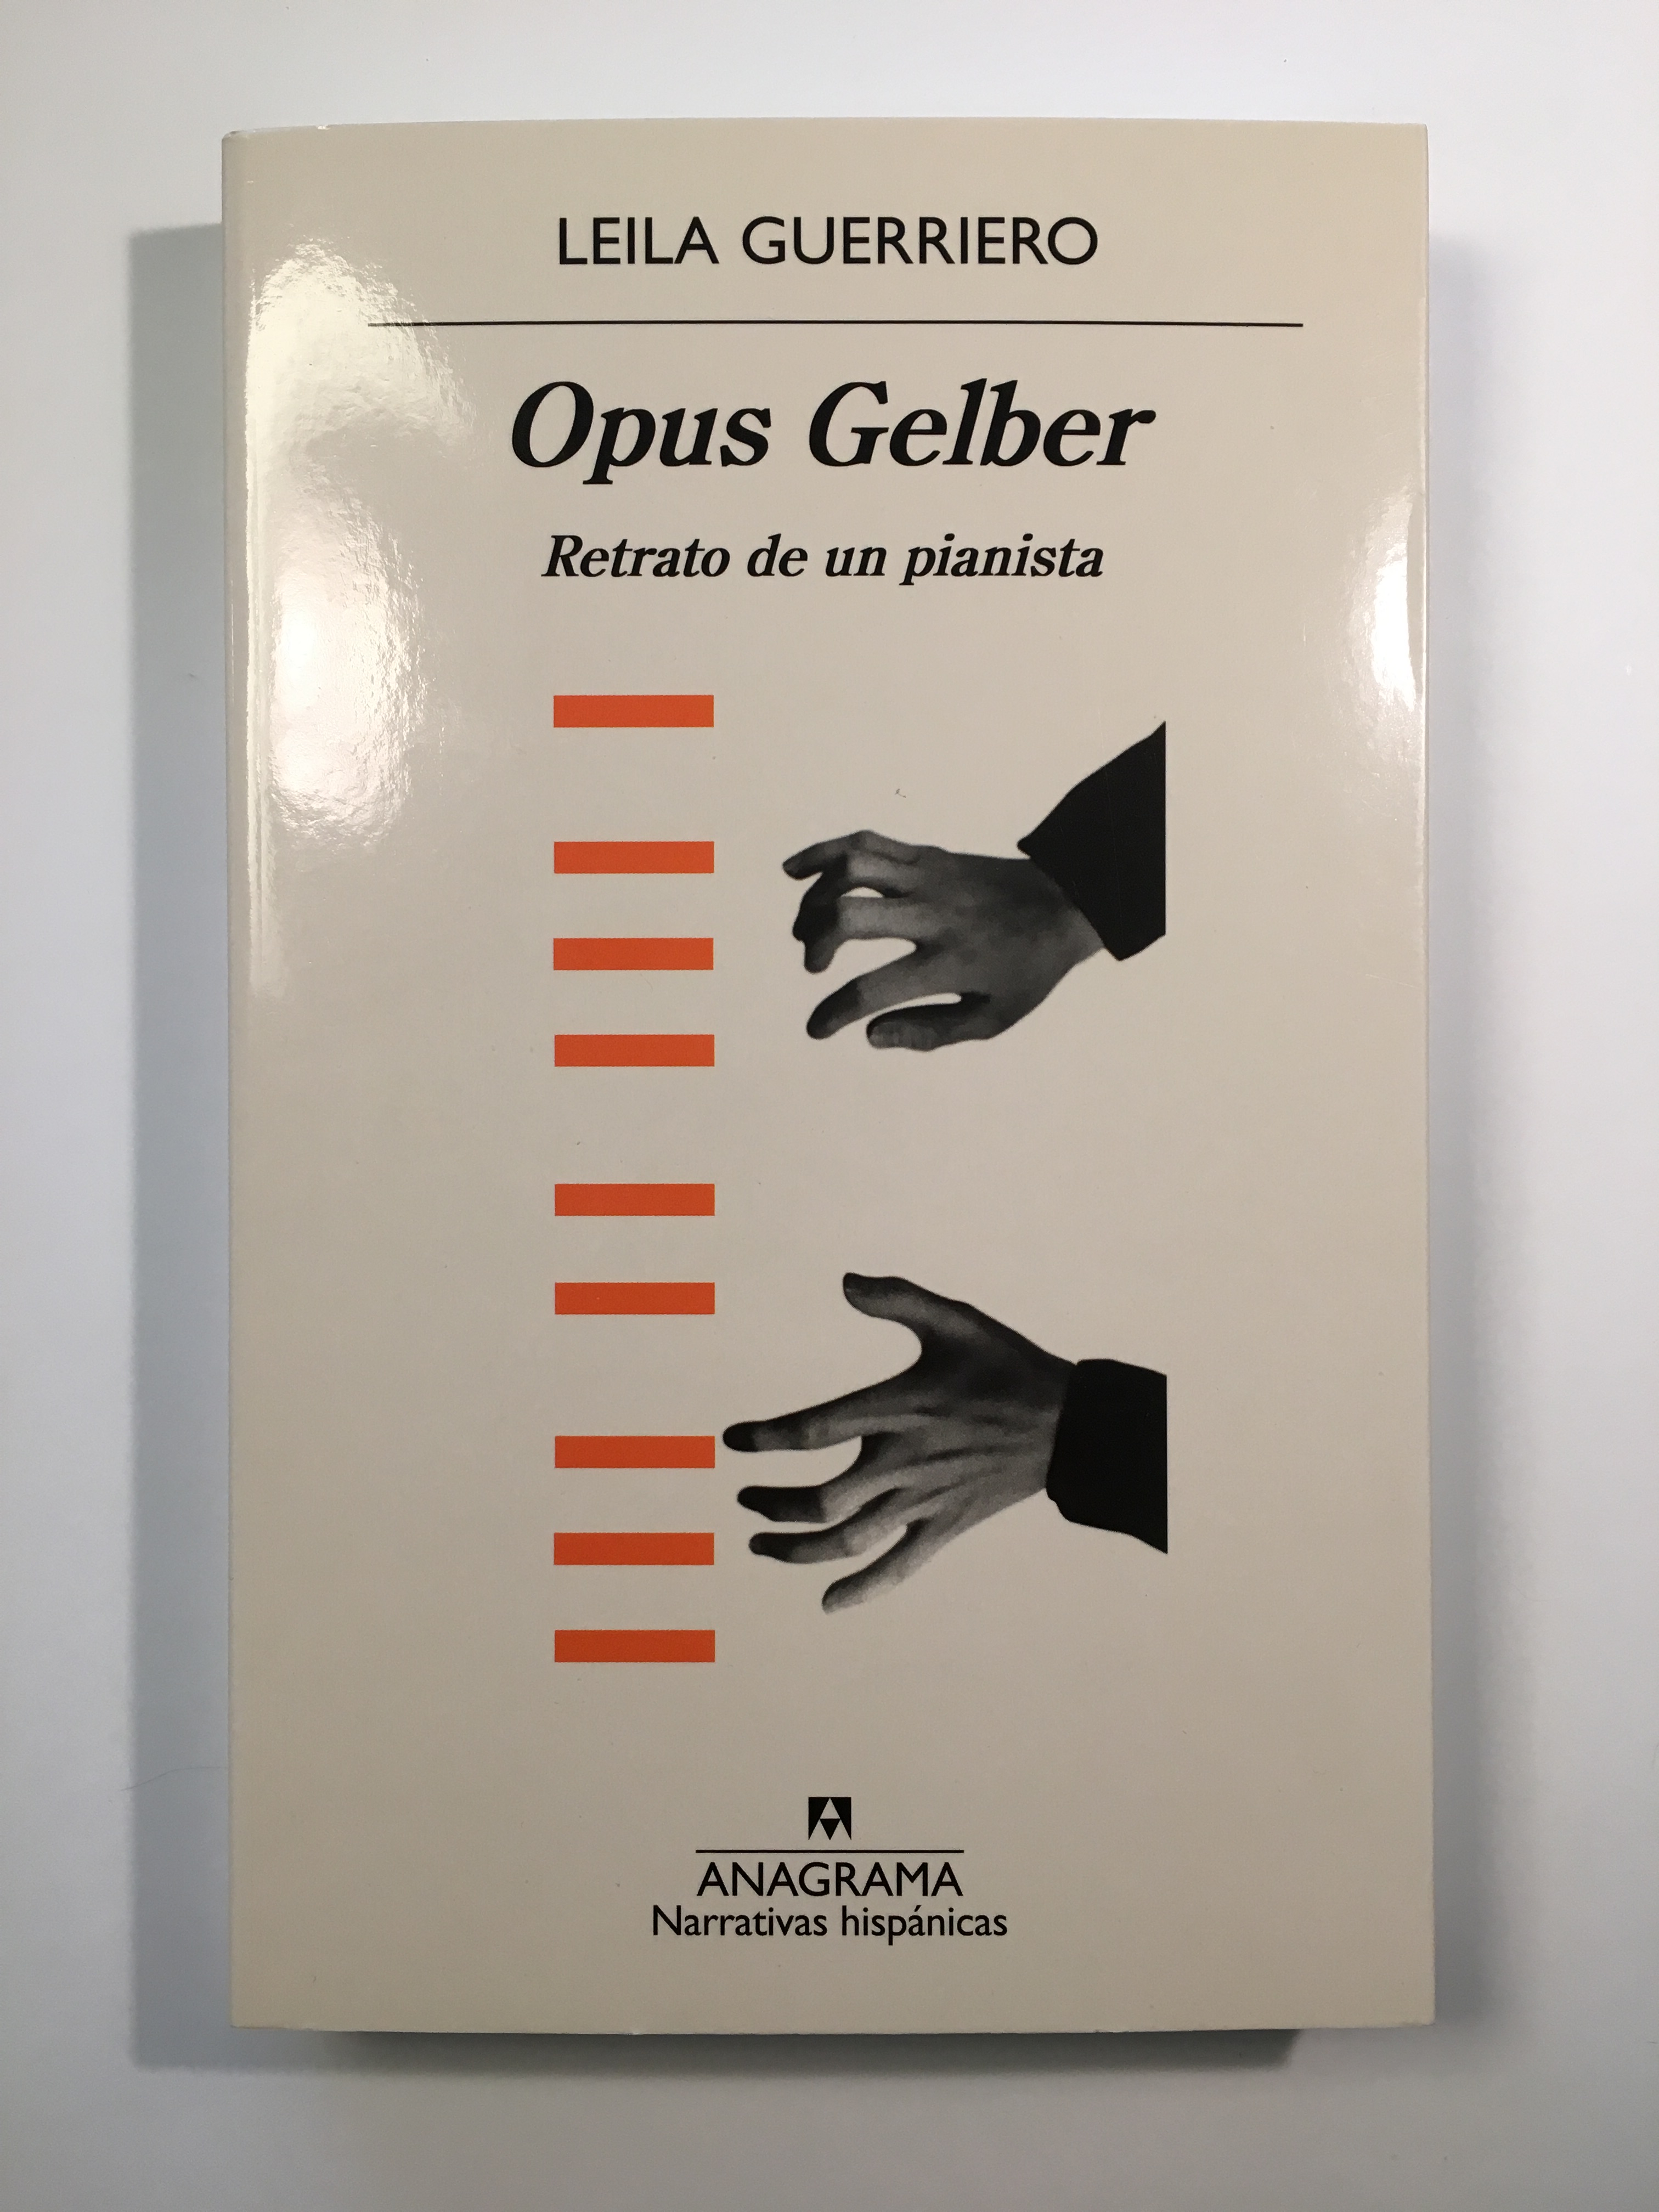 Opus Gelber - Guerriero, Leila - 978-84-339-9872-9 - Editorial